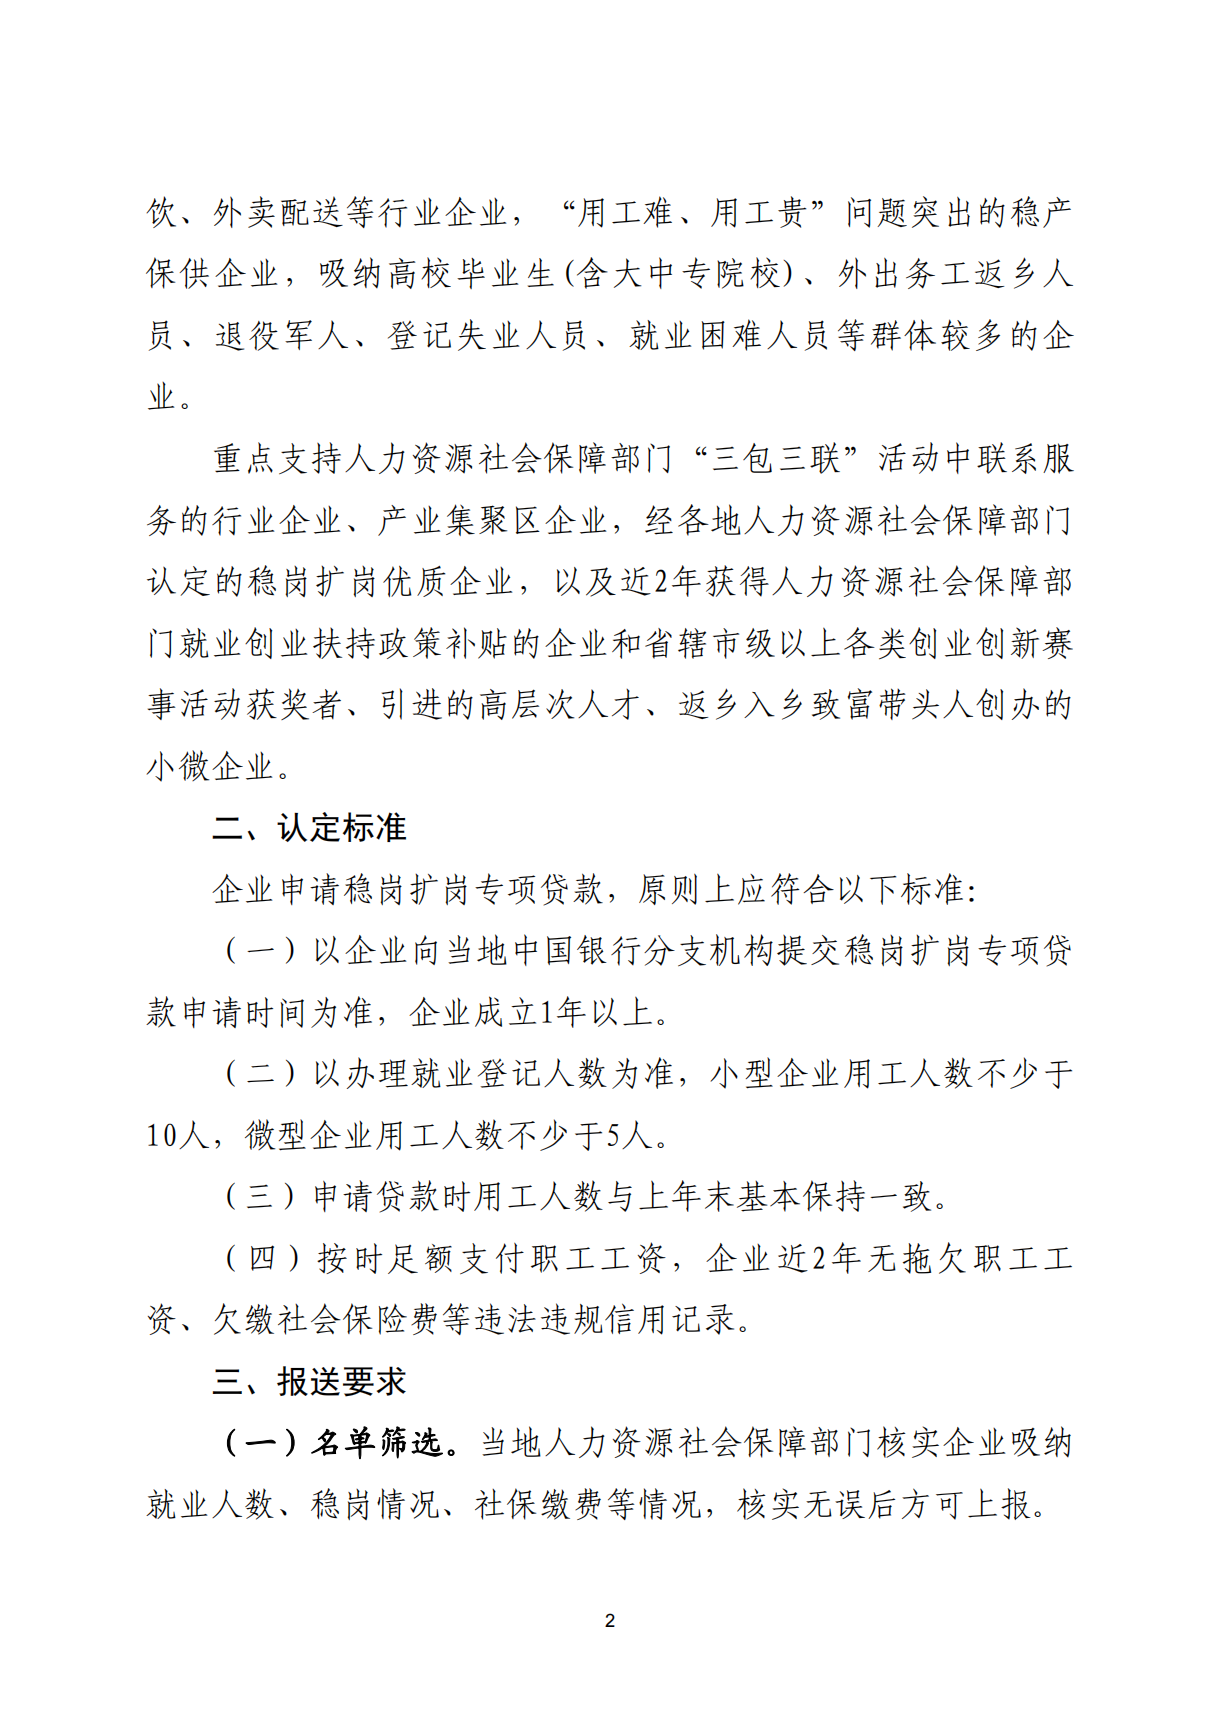 南阳市人力资源和社会保障局关于报送稳岗扩岗专项贷款目标企业名单的通知(1)_01.png